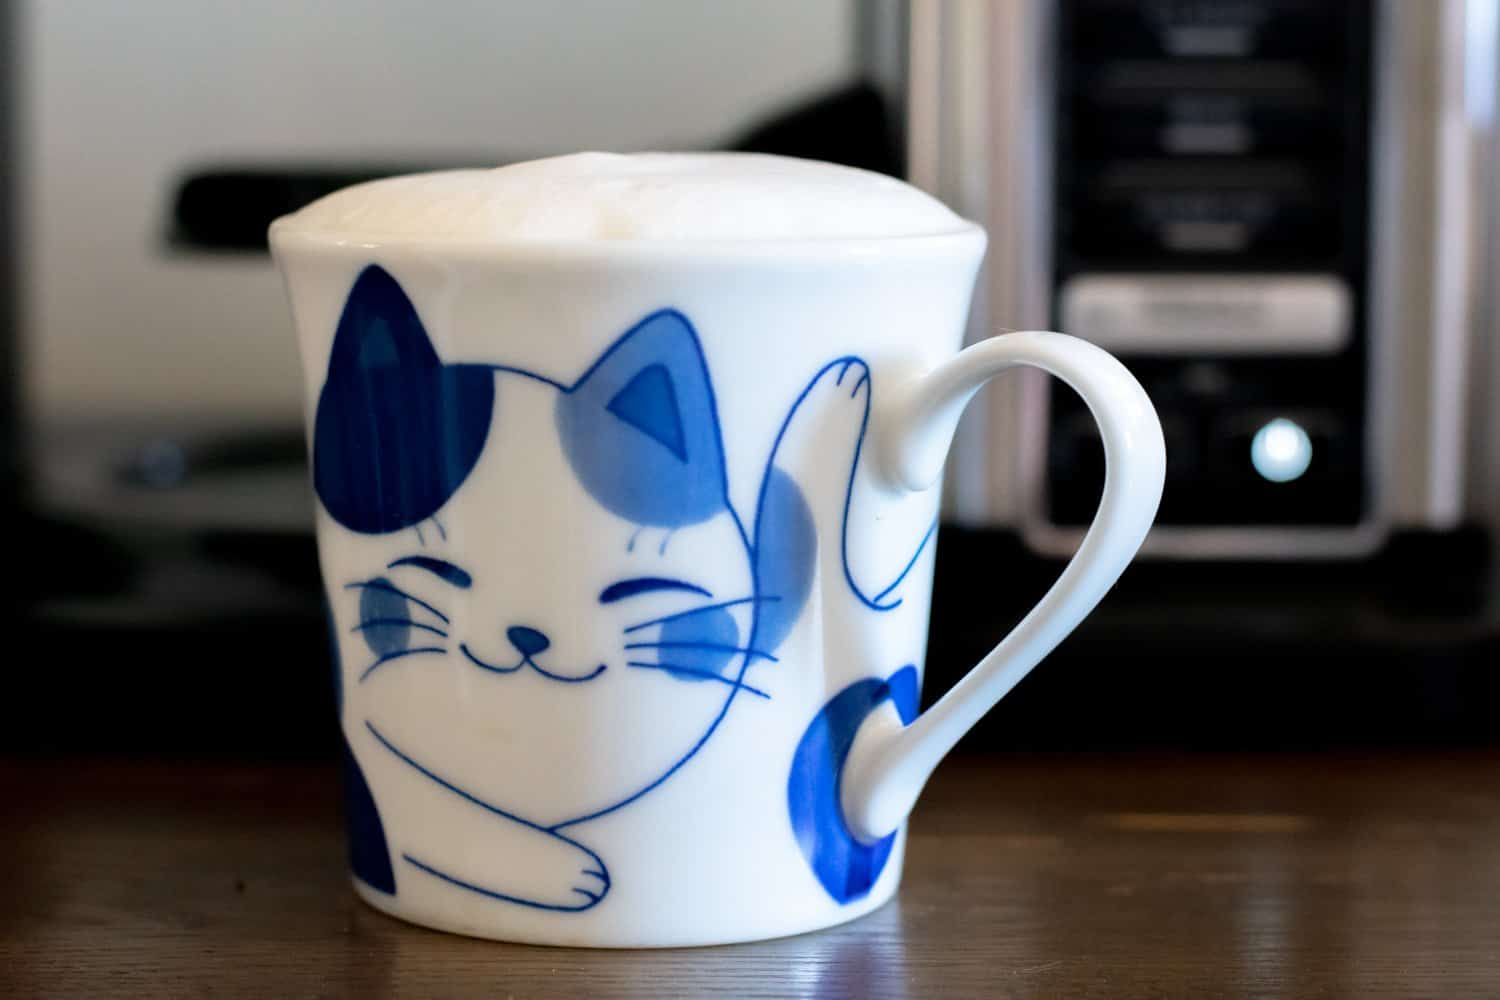 https://www.coffeeness.de/wp-content/uploads/2021/12/ninja-specialty-coffee-maker-cm401-cappuccino.jpg